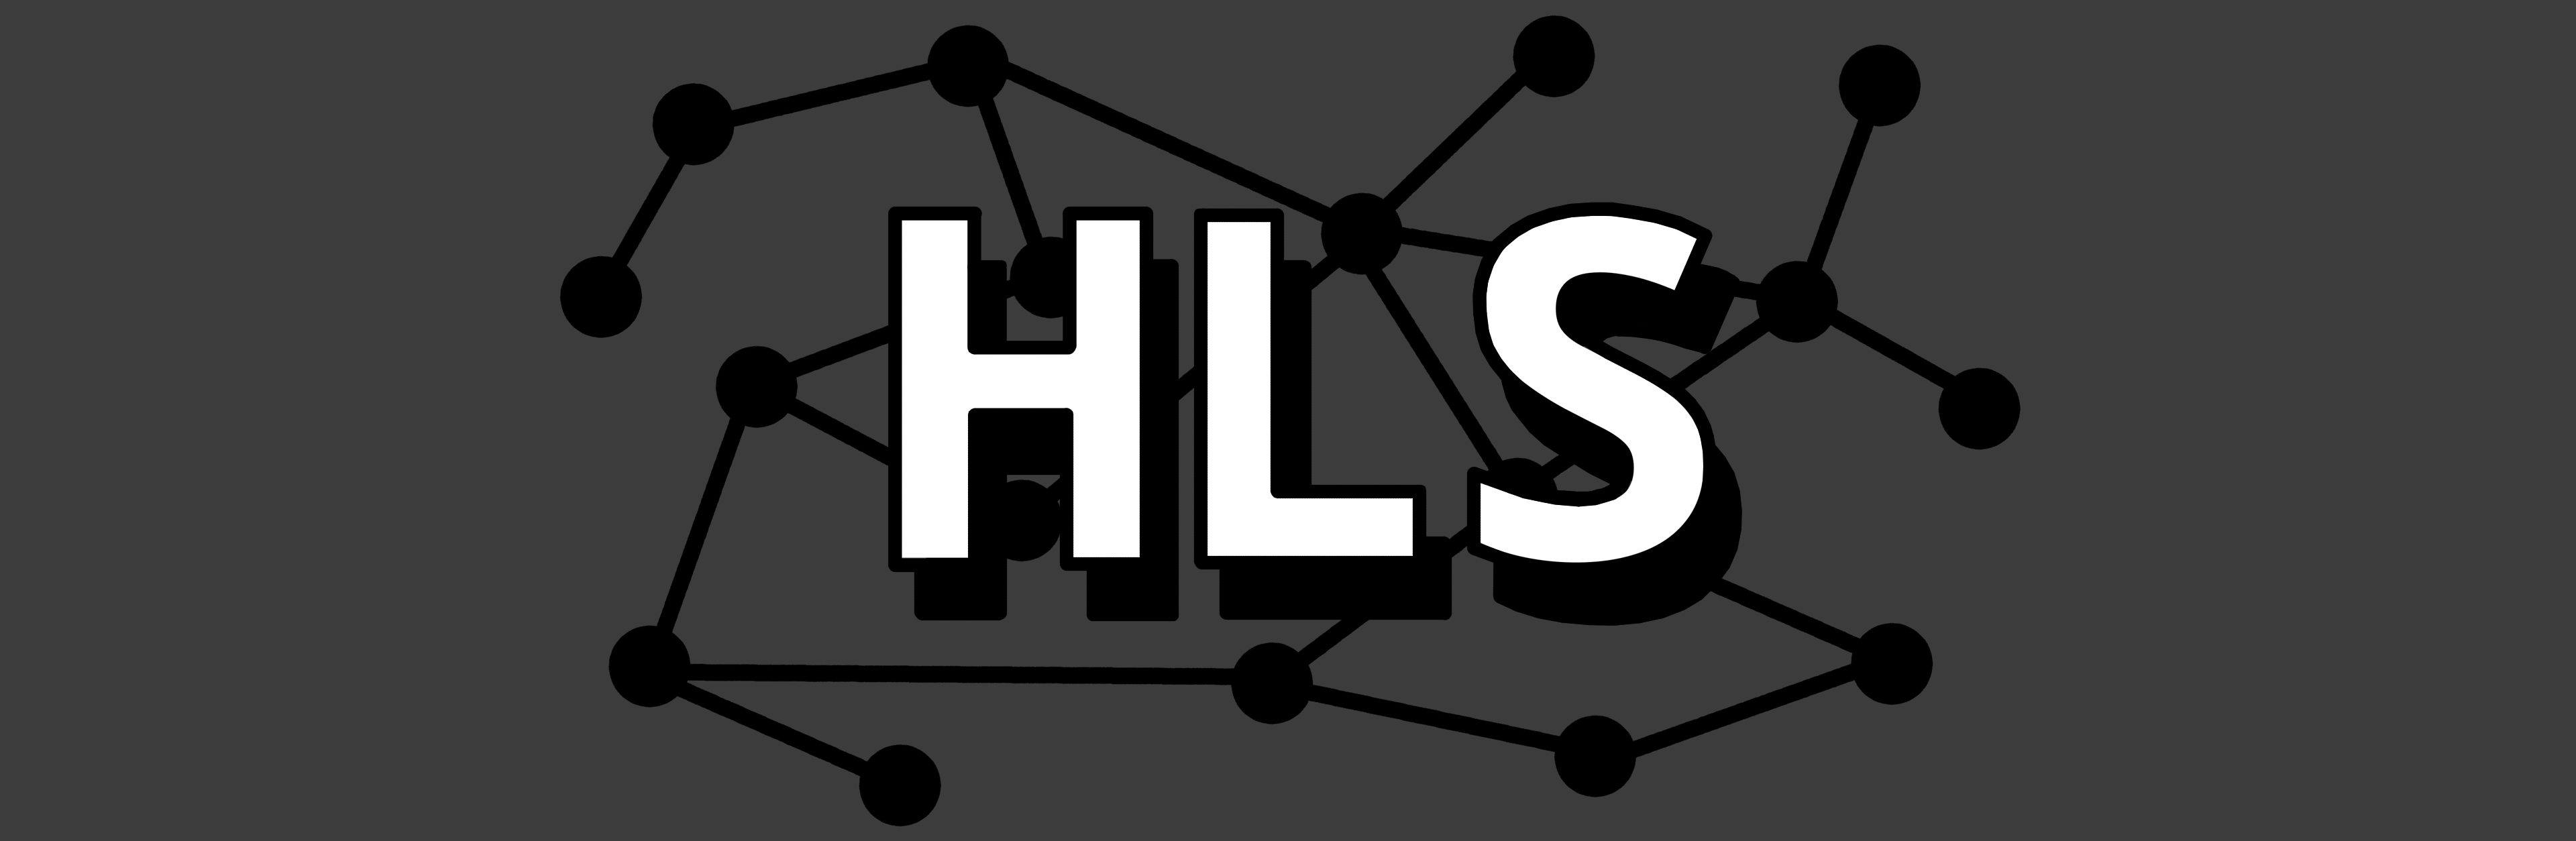 hls_logo.png